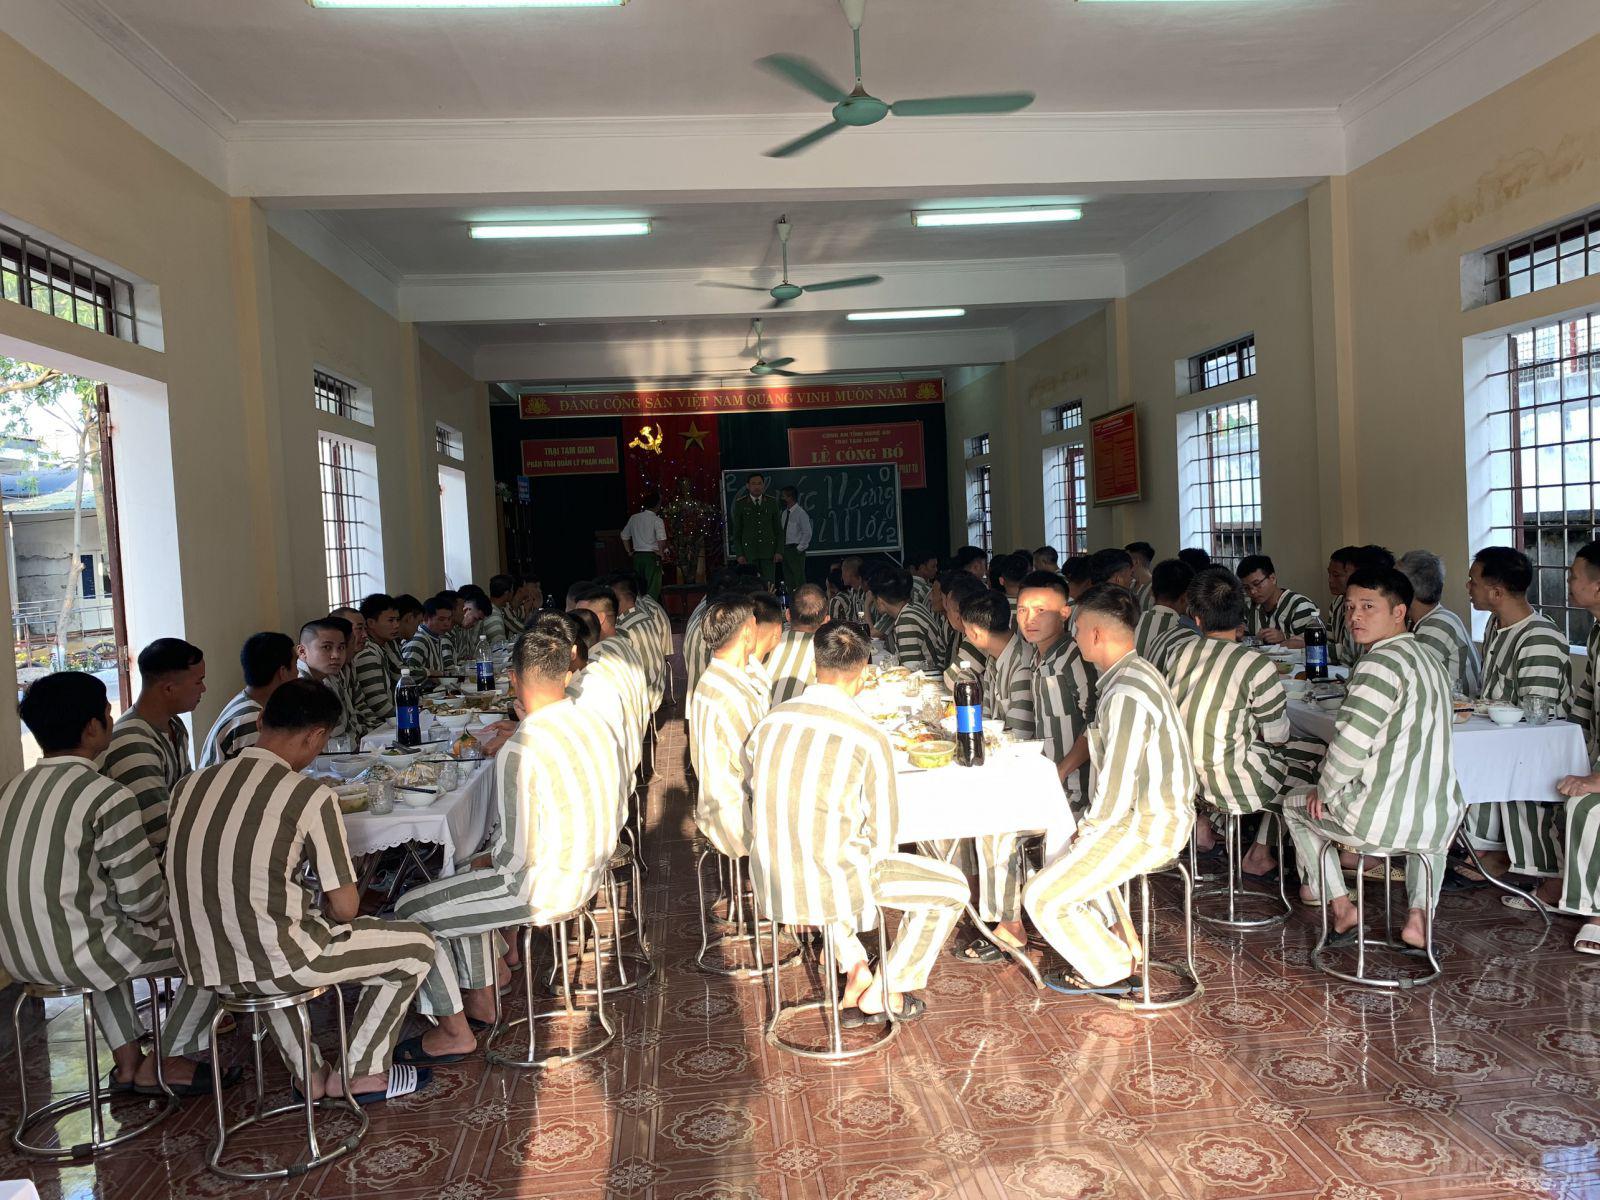 Thành thông lệ, bữa cơm tất niên ở Trại tạm giam Công an tỉnh Nghệ An được tổ chức sớm hơn bên ngoài cho những số phận lầm lỡ đang phải chịu các án phạt của pháp luật mà trước đó họ đã “dính chàm”.